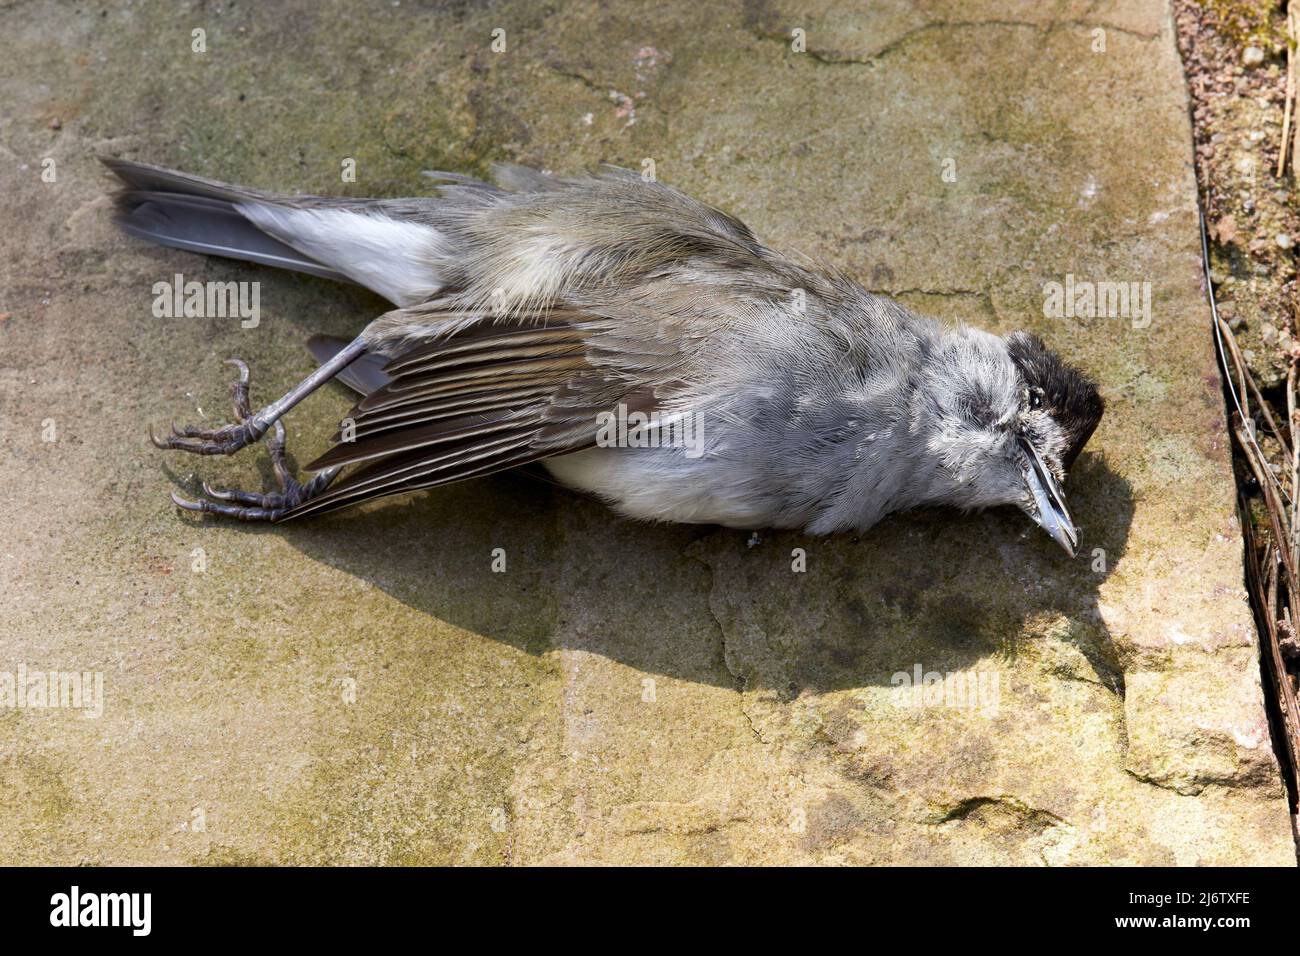 Pájaro Black Cap muerto fuera de un conservatorio habiendo volado en una gran ventana de cristal Foto de stock